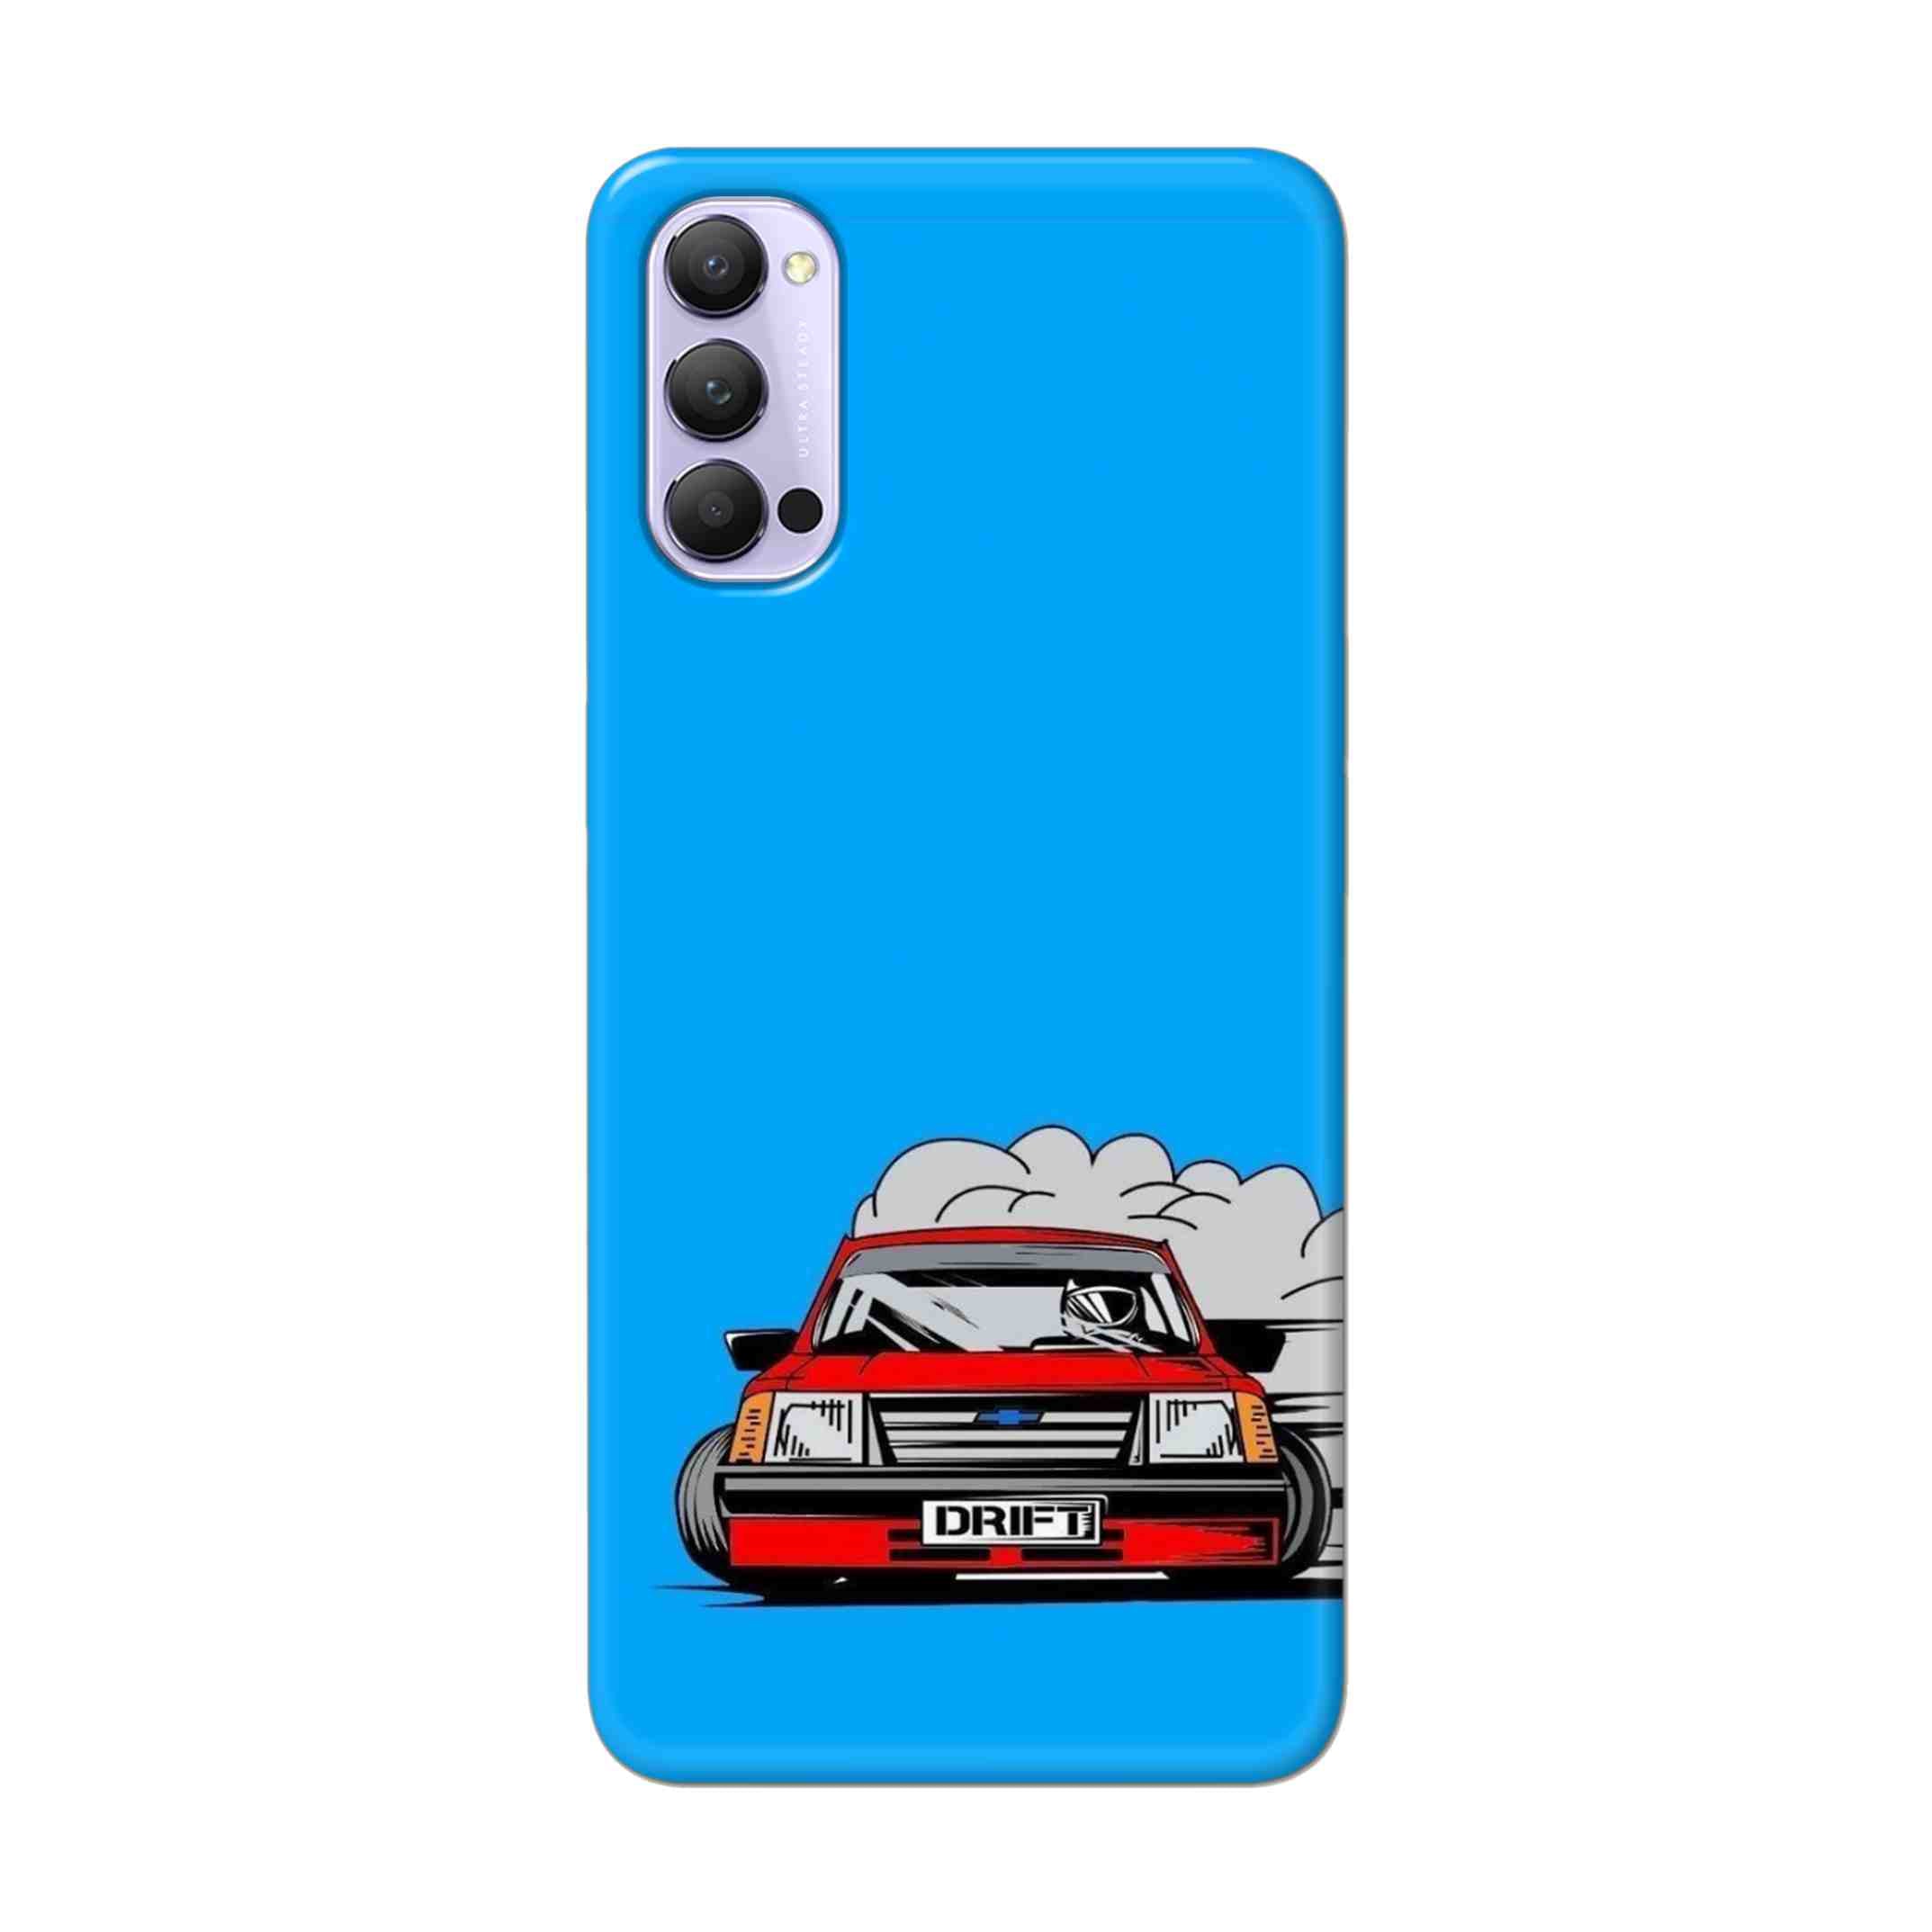 Buy Drift Hard Back Mobile Phone Case Cover For Oppo Reno 4 Pro Online